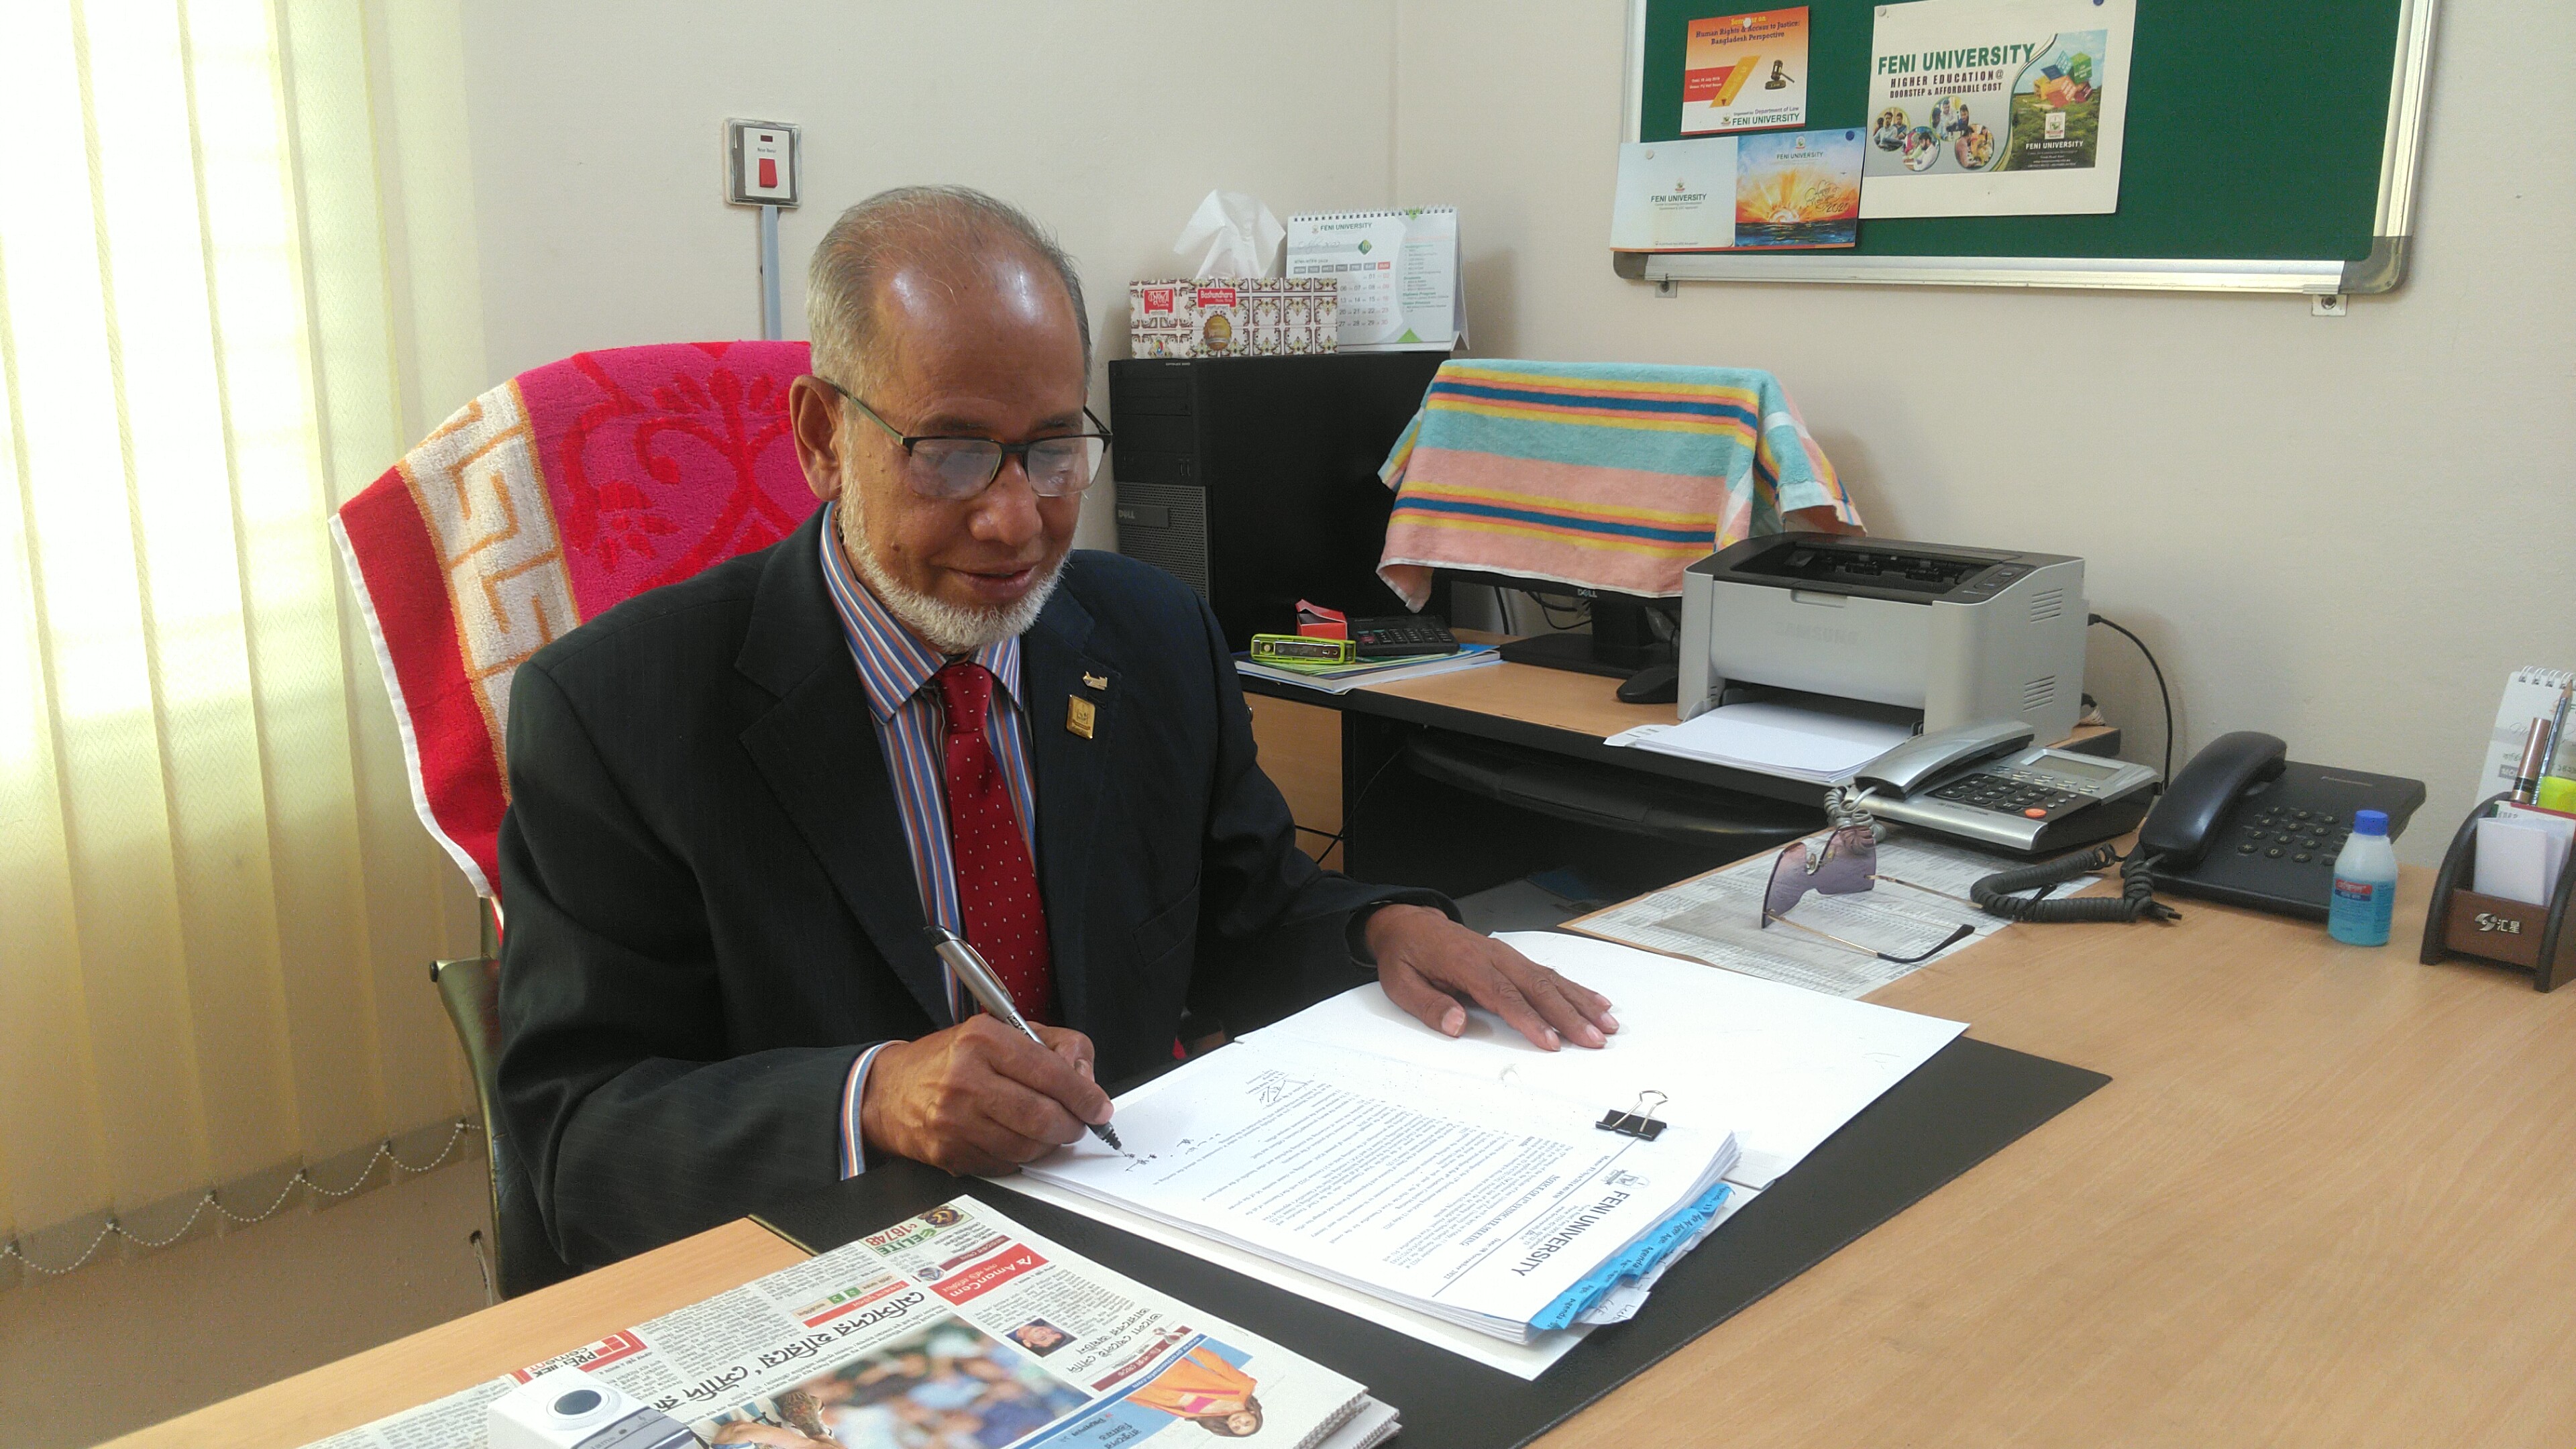 Professor Dr. M. Jamaluddin Ahmed, FRSC,FRS